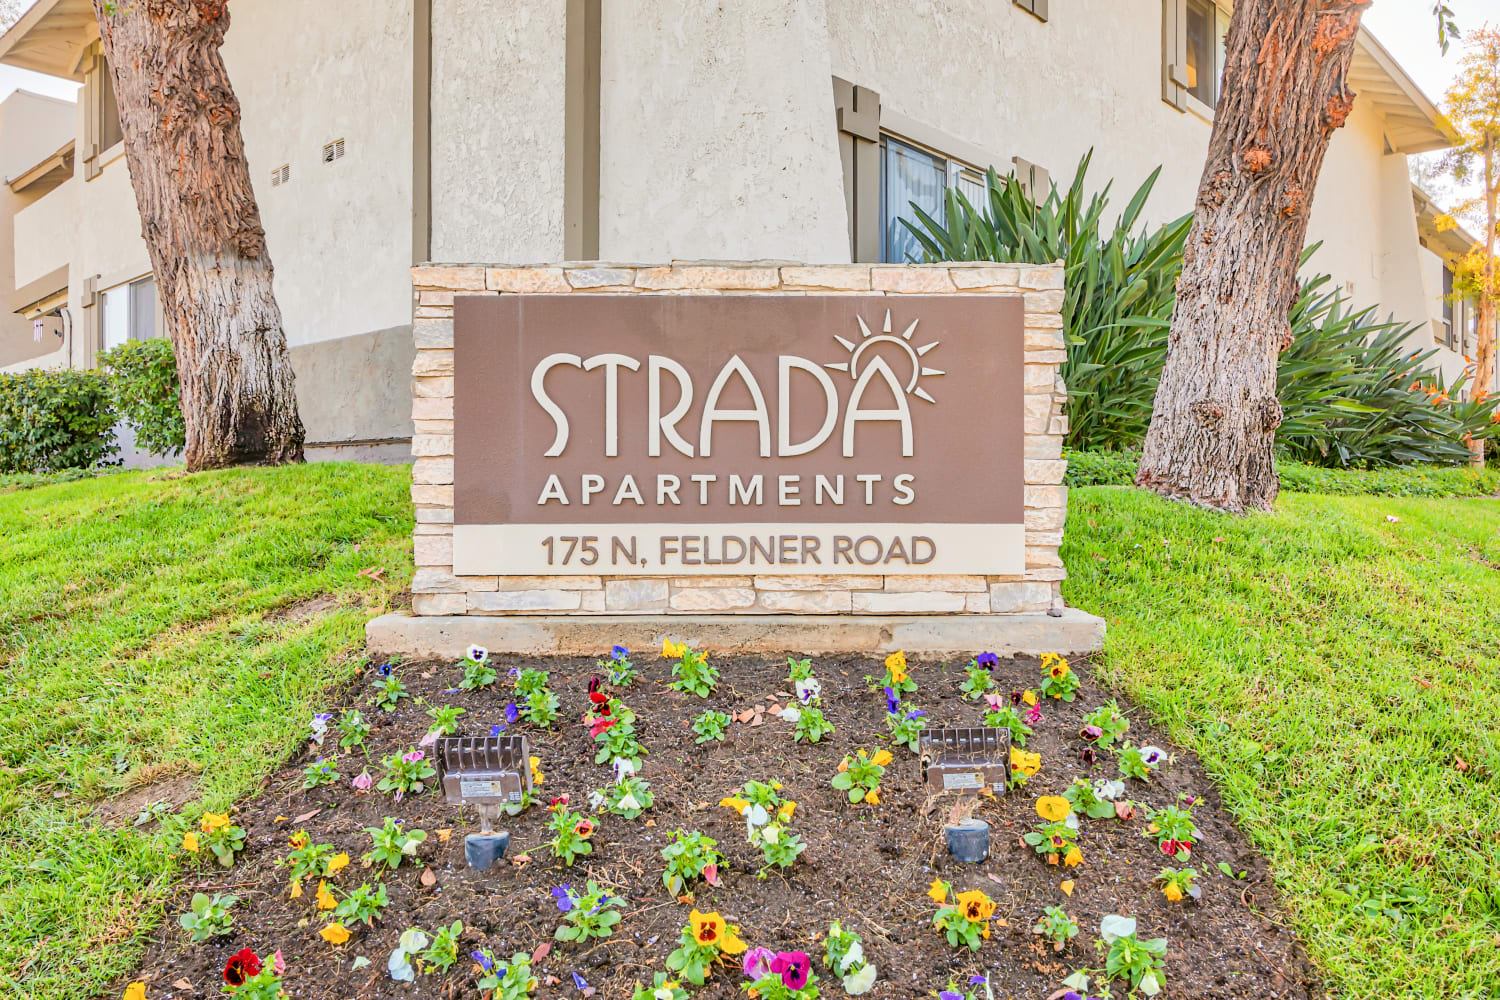 Strada Apartments in Orange, California